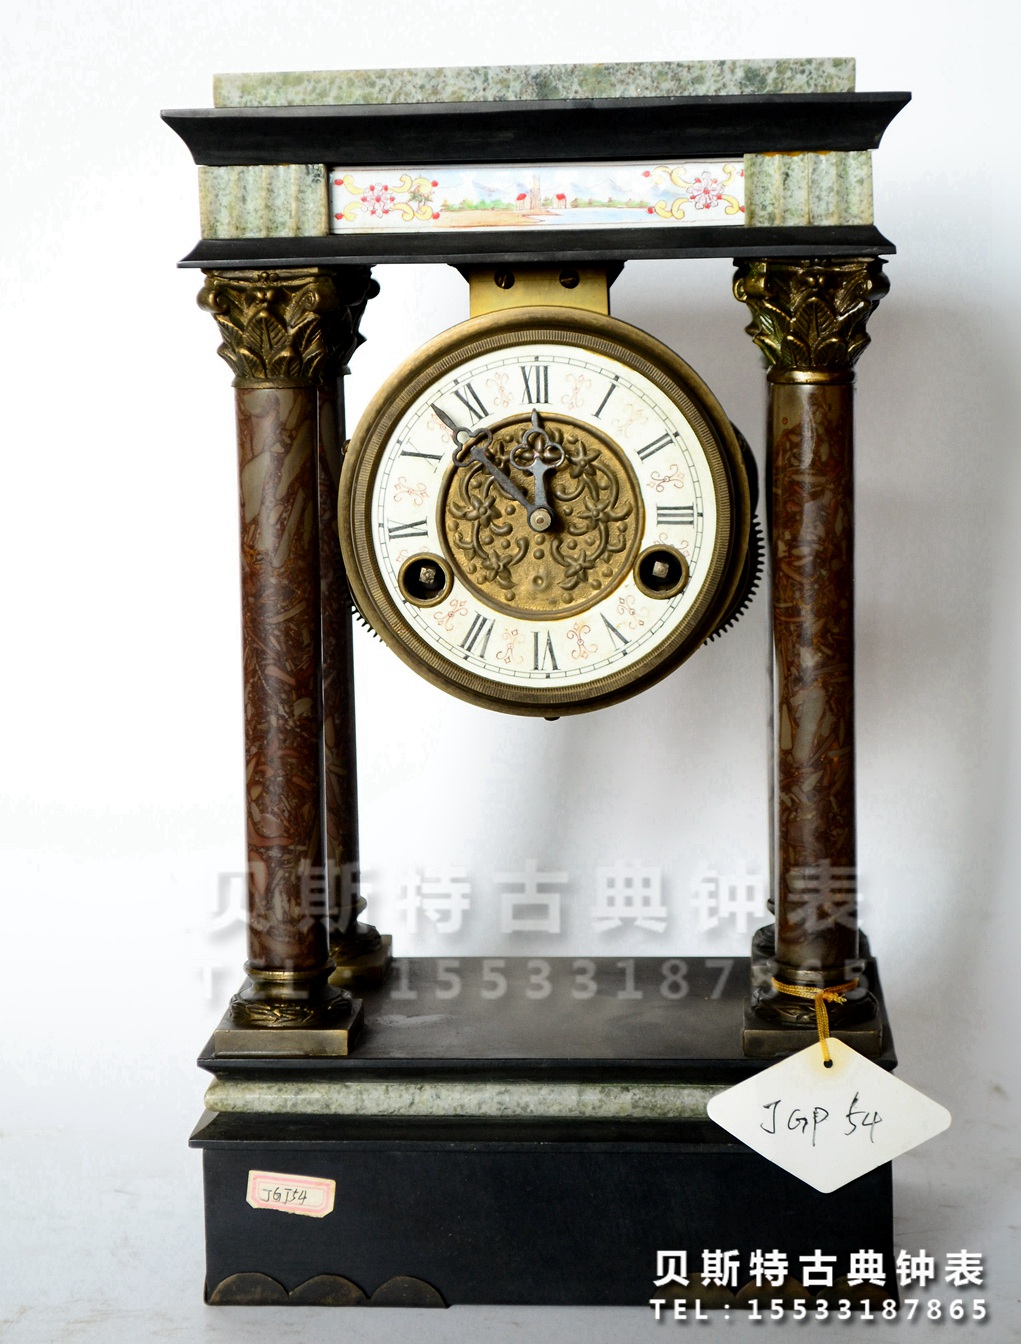 四明报时钟表|理石仿复古机械座钟|老式仿古董钟|上弦台钟|苏钟